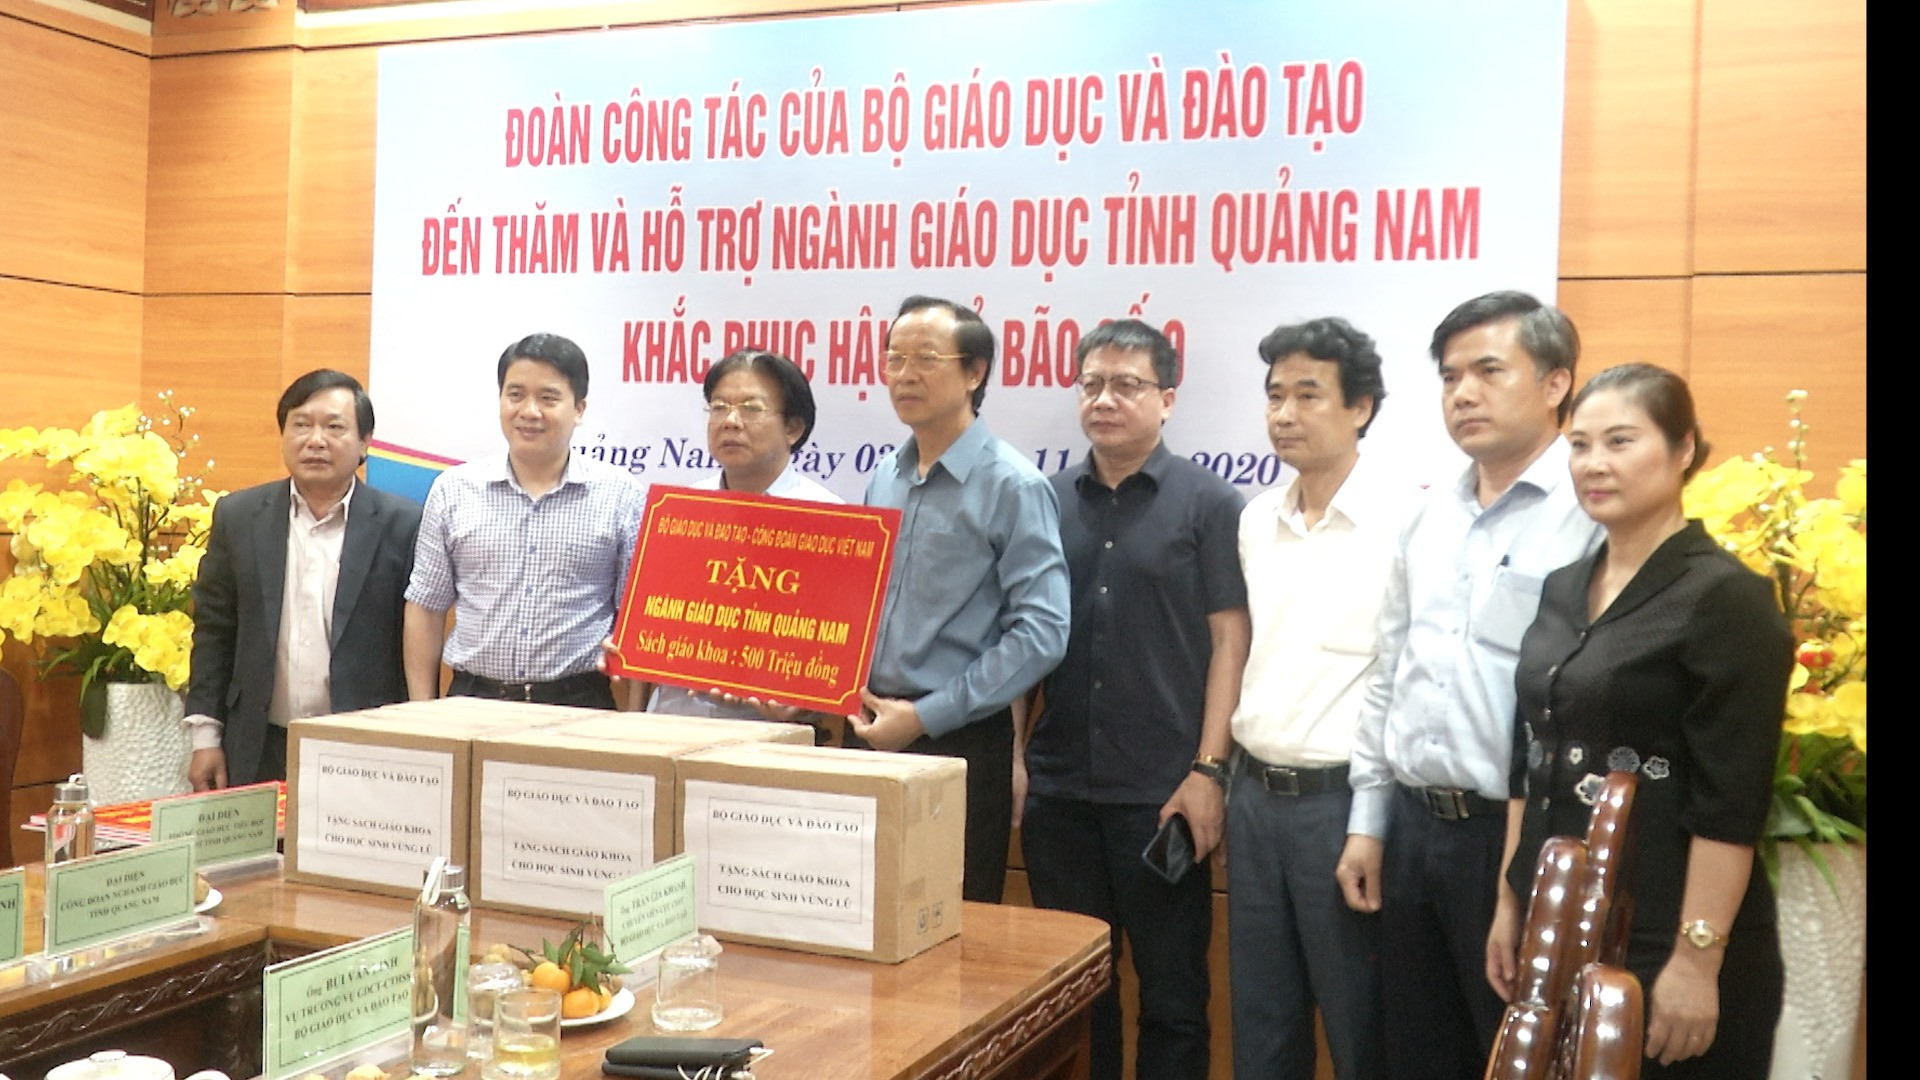 Thứ trưởng Bộ GD-ĐT Phạm Ngọc Thưởng trao tiền hỗ trợ ngành giáo dục Quảng Nam khắc phục hậu quả bão số 9.